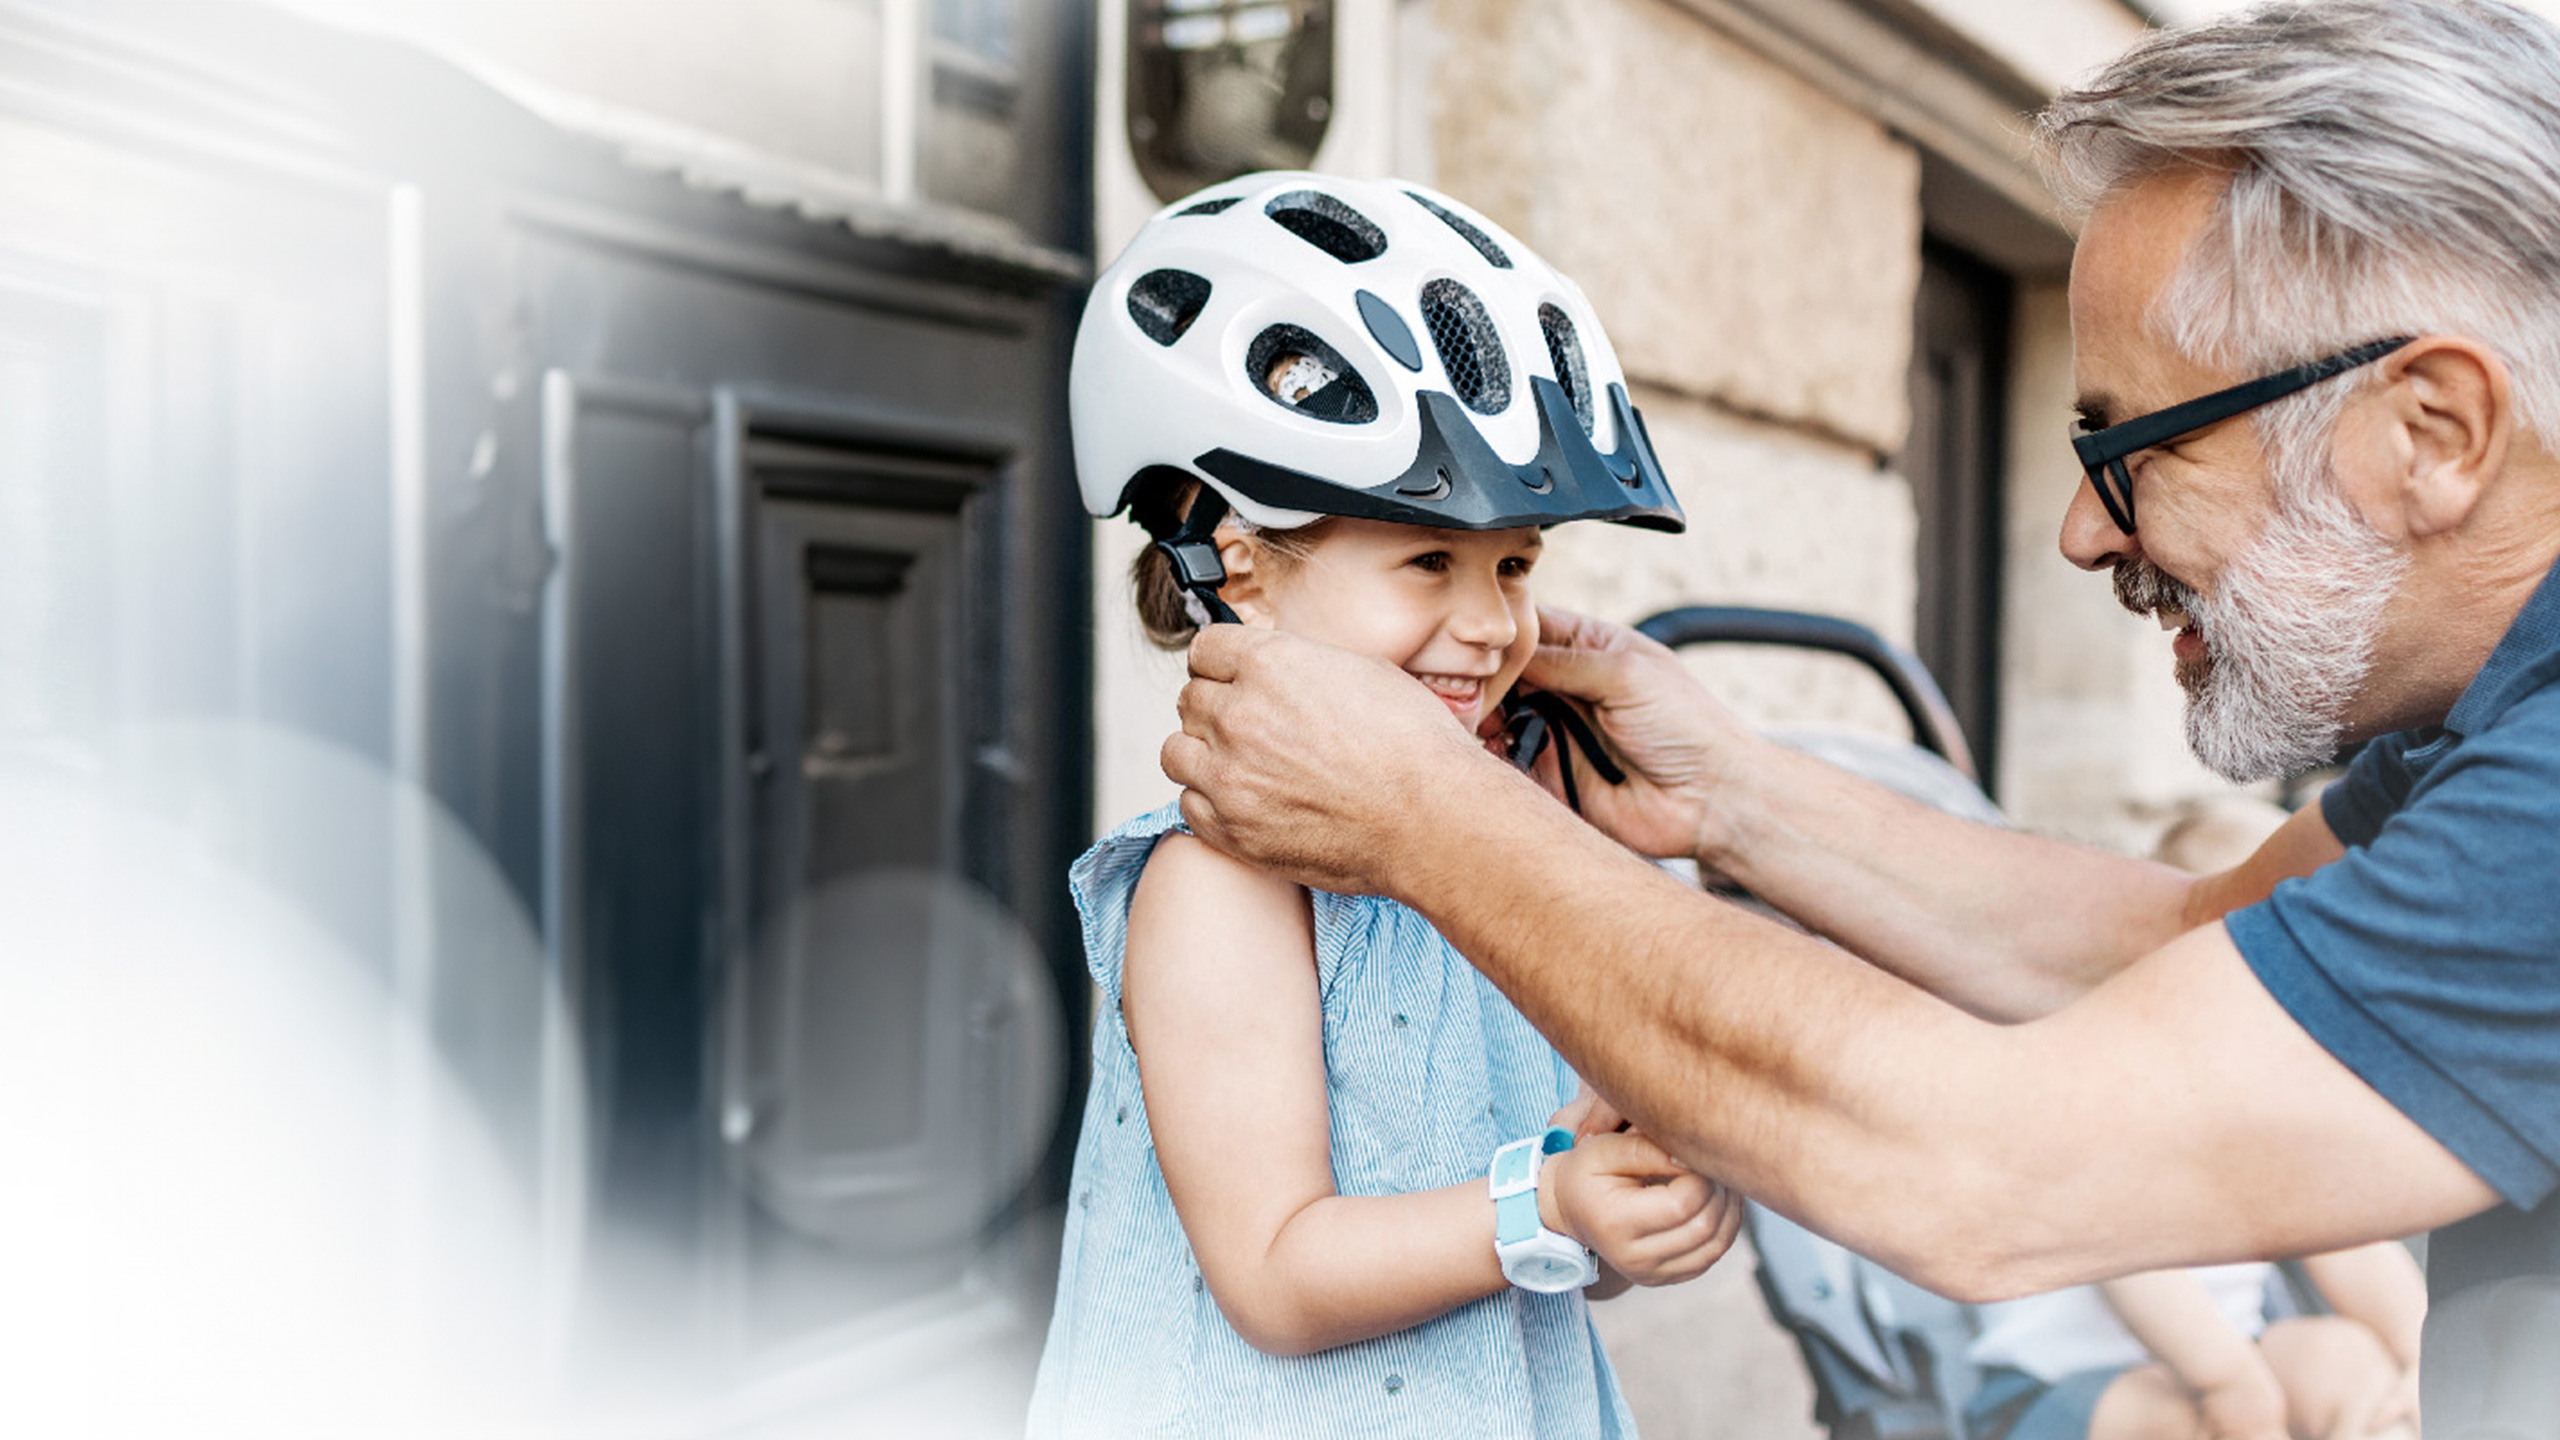 Mann setzt einem kleinen Mädchen einen Helm auf. Beide lächeln glücklich.